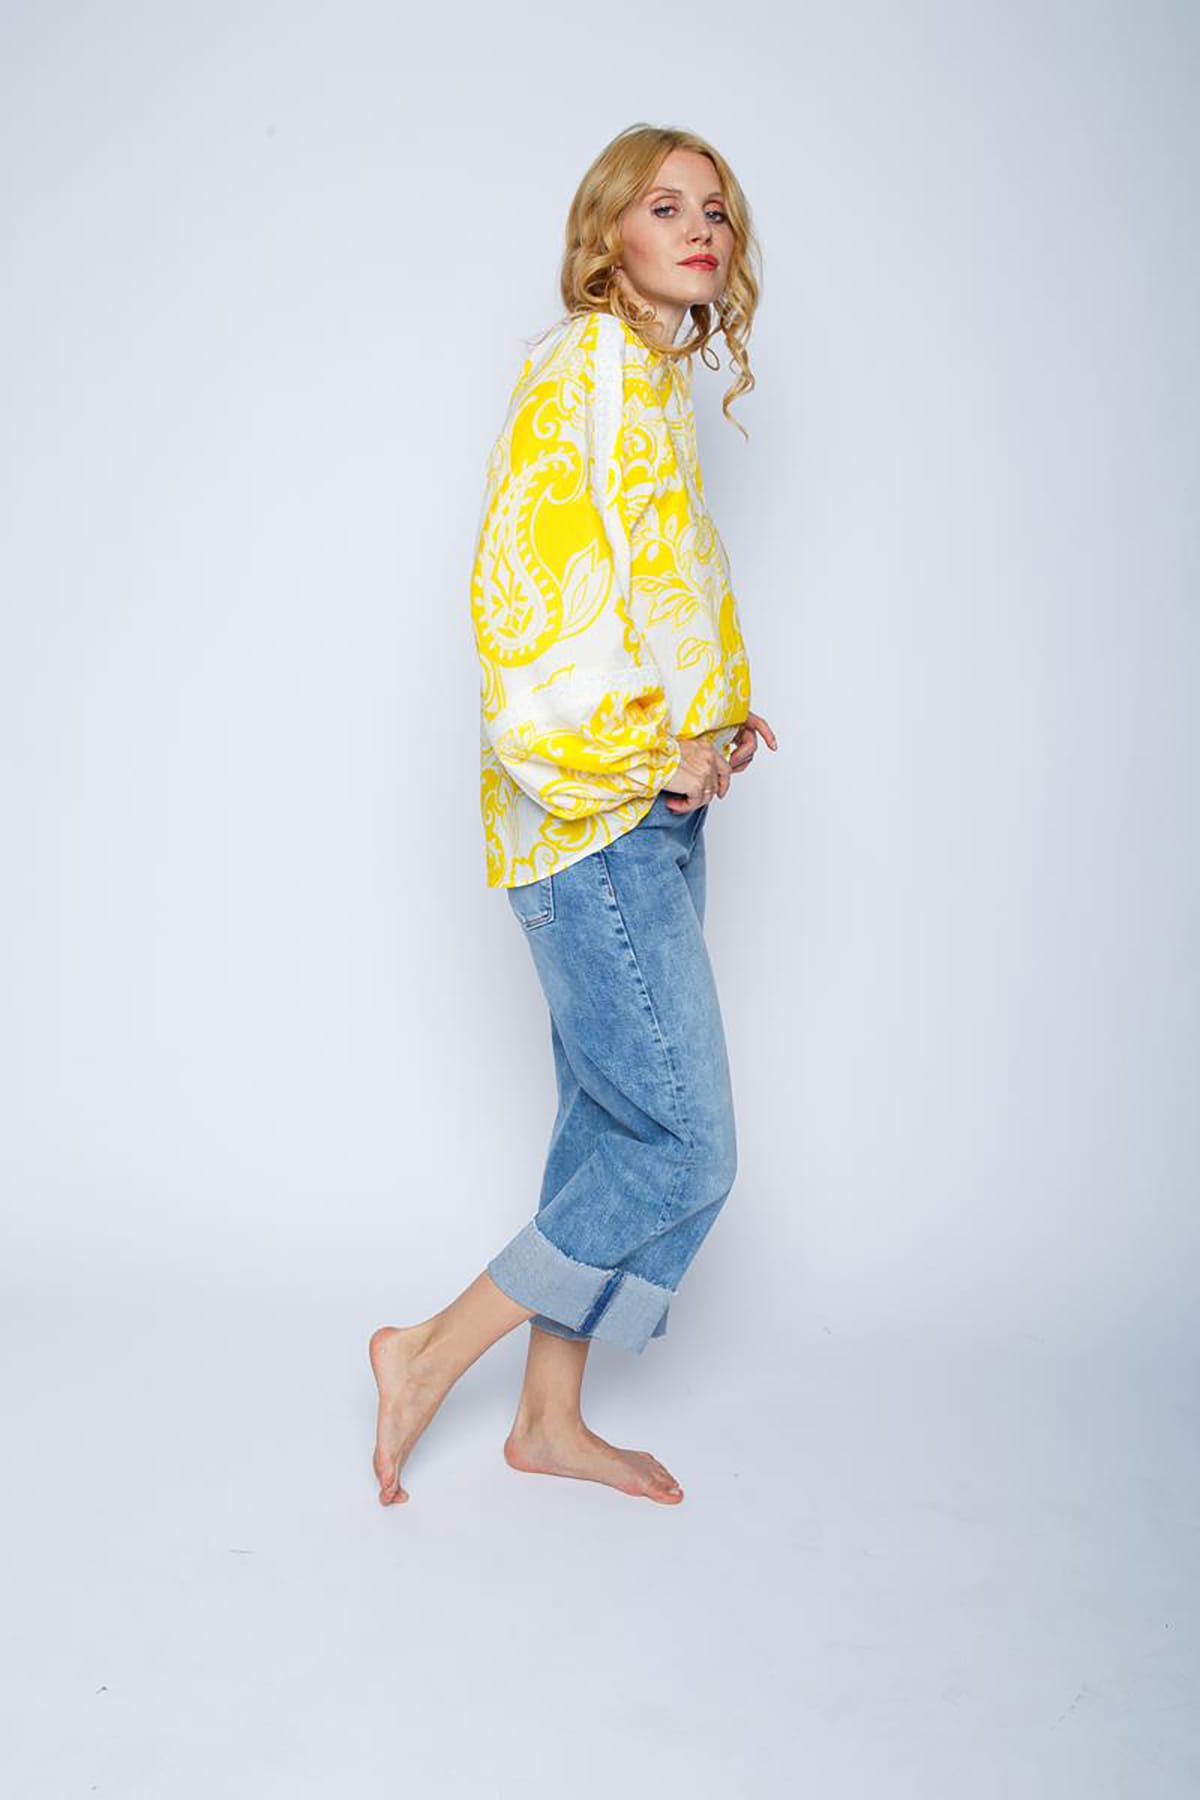 Leichte Bluse mit V-Ausschnitt und halber Knopfleiste yellow flowers Bluse Emily van den Bergh 